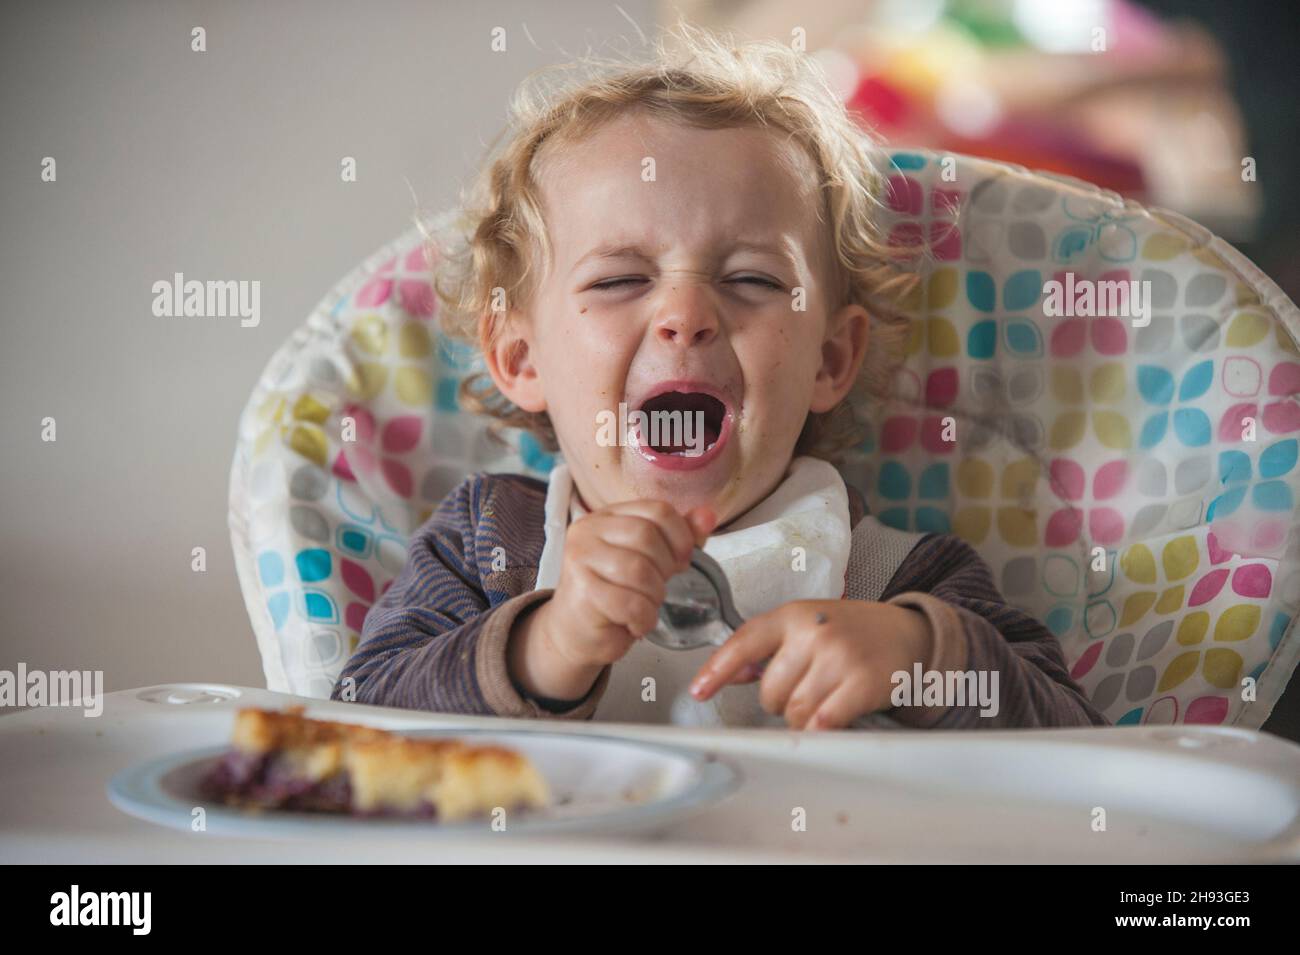 Una niña de 2 años llora mientras se sienta en una silla alta con algo de pastel como merienda por la tarde Foto de stock